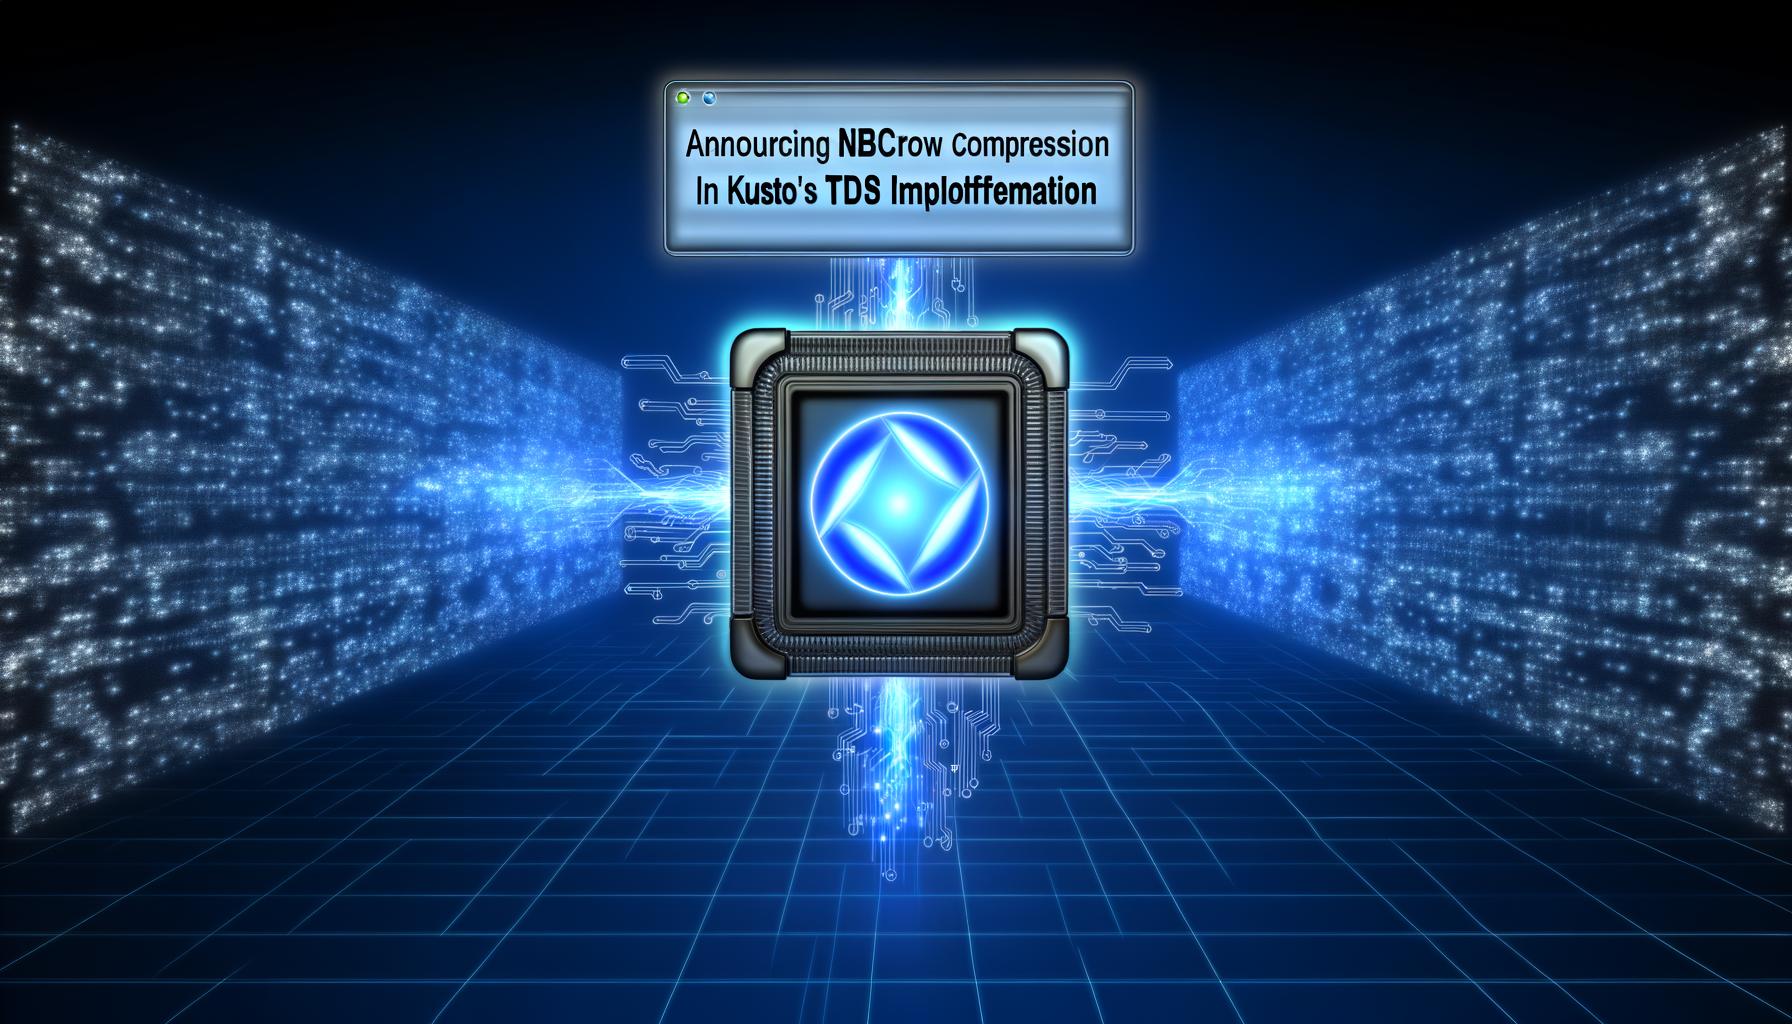 Annonce de la compression NBCROW dans l'implémentation TDS de Kusto